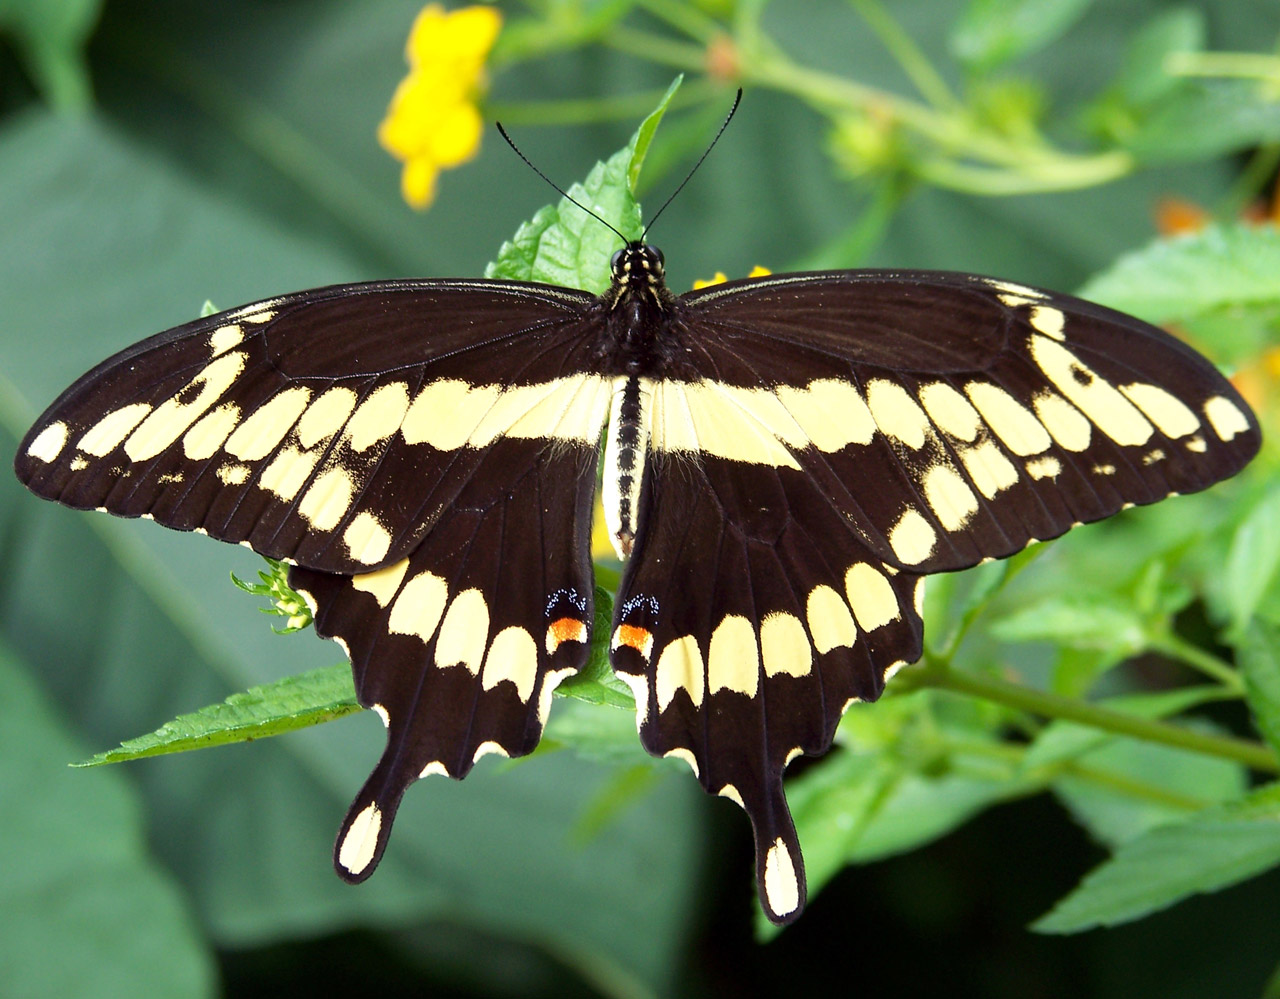 file-monarch-butterfly-danaus-plexippus-5890526585-jpg-wikimedia